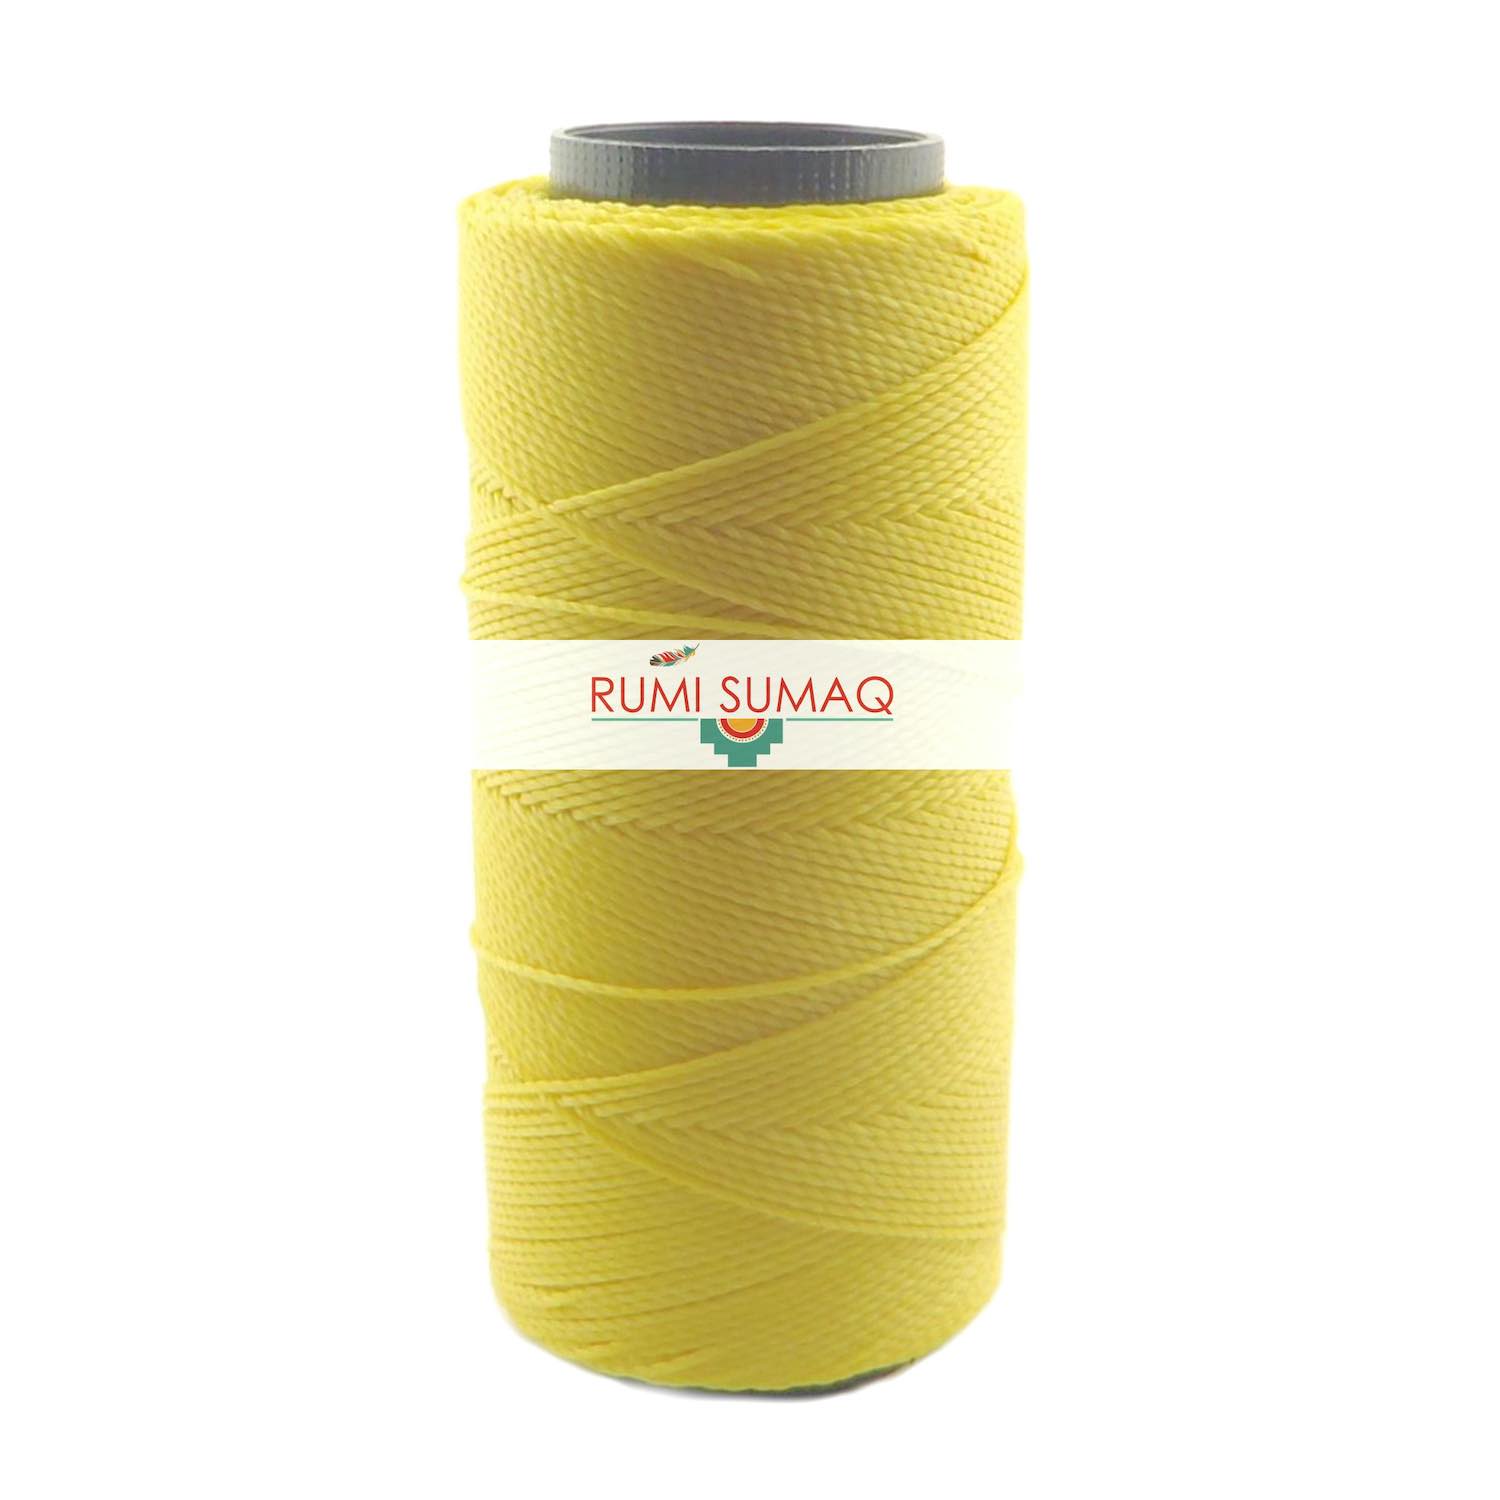 Settanyl 01-314 Canary Yellow Waxed Polyester Cord 1mm Waxed Thread | RUMI SUMAQ